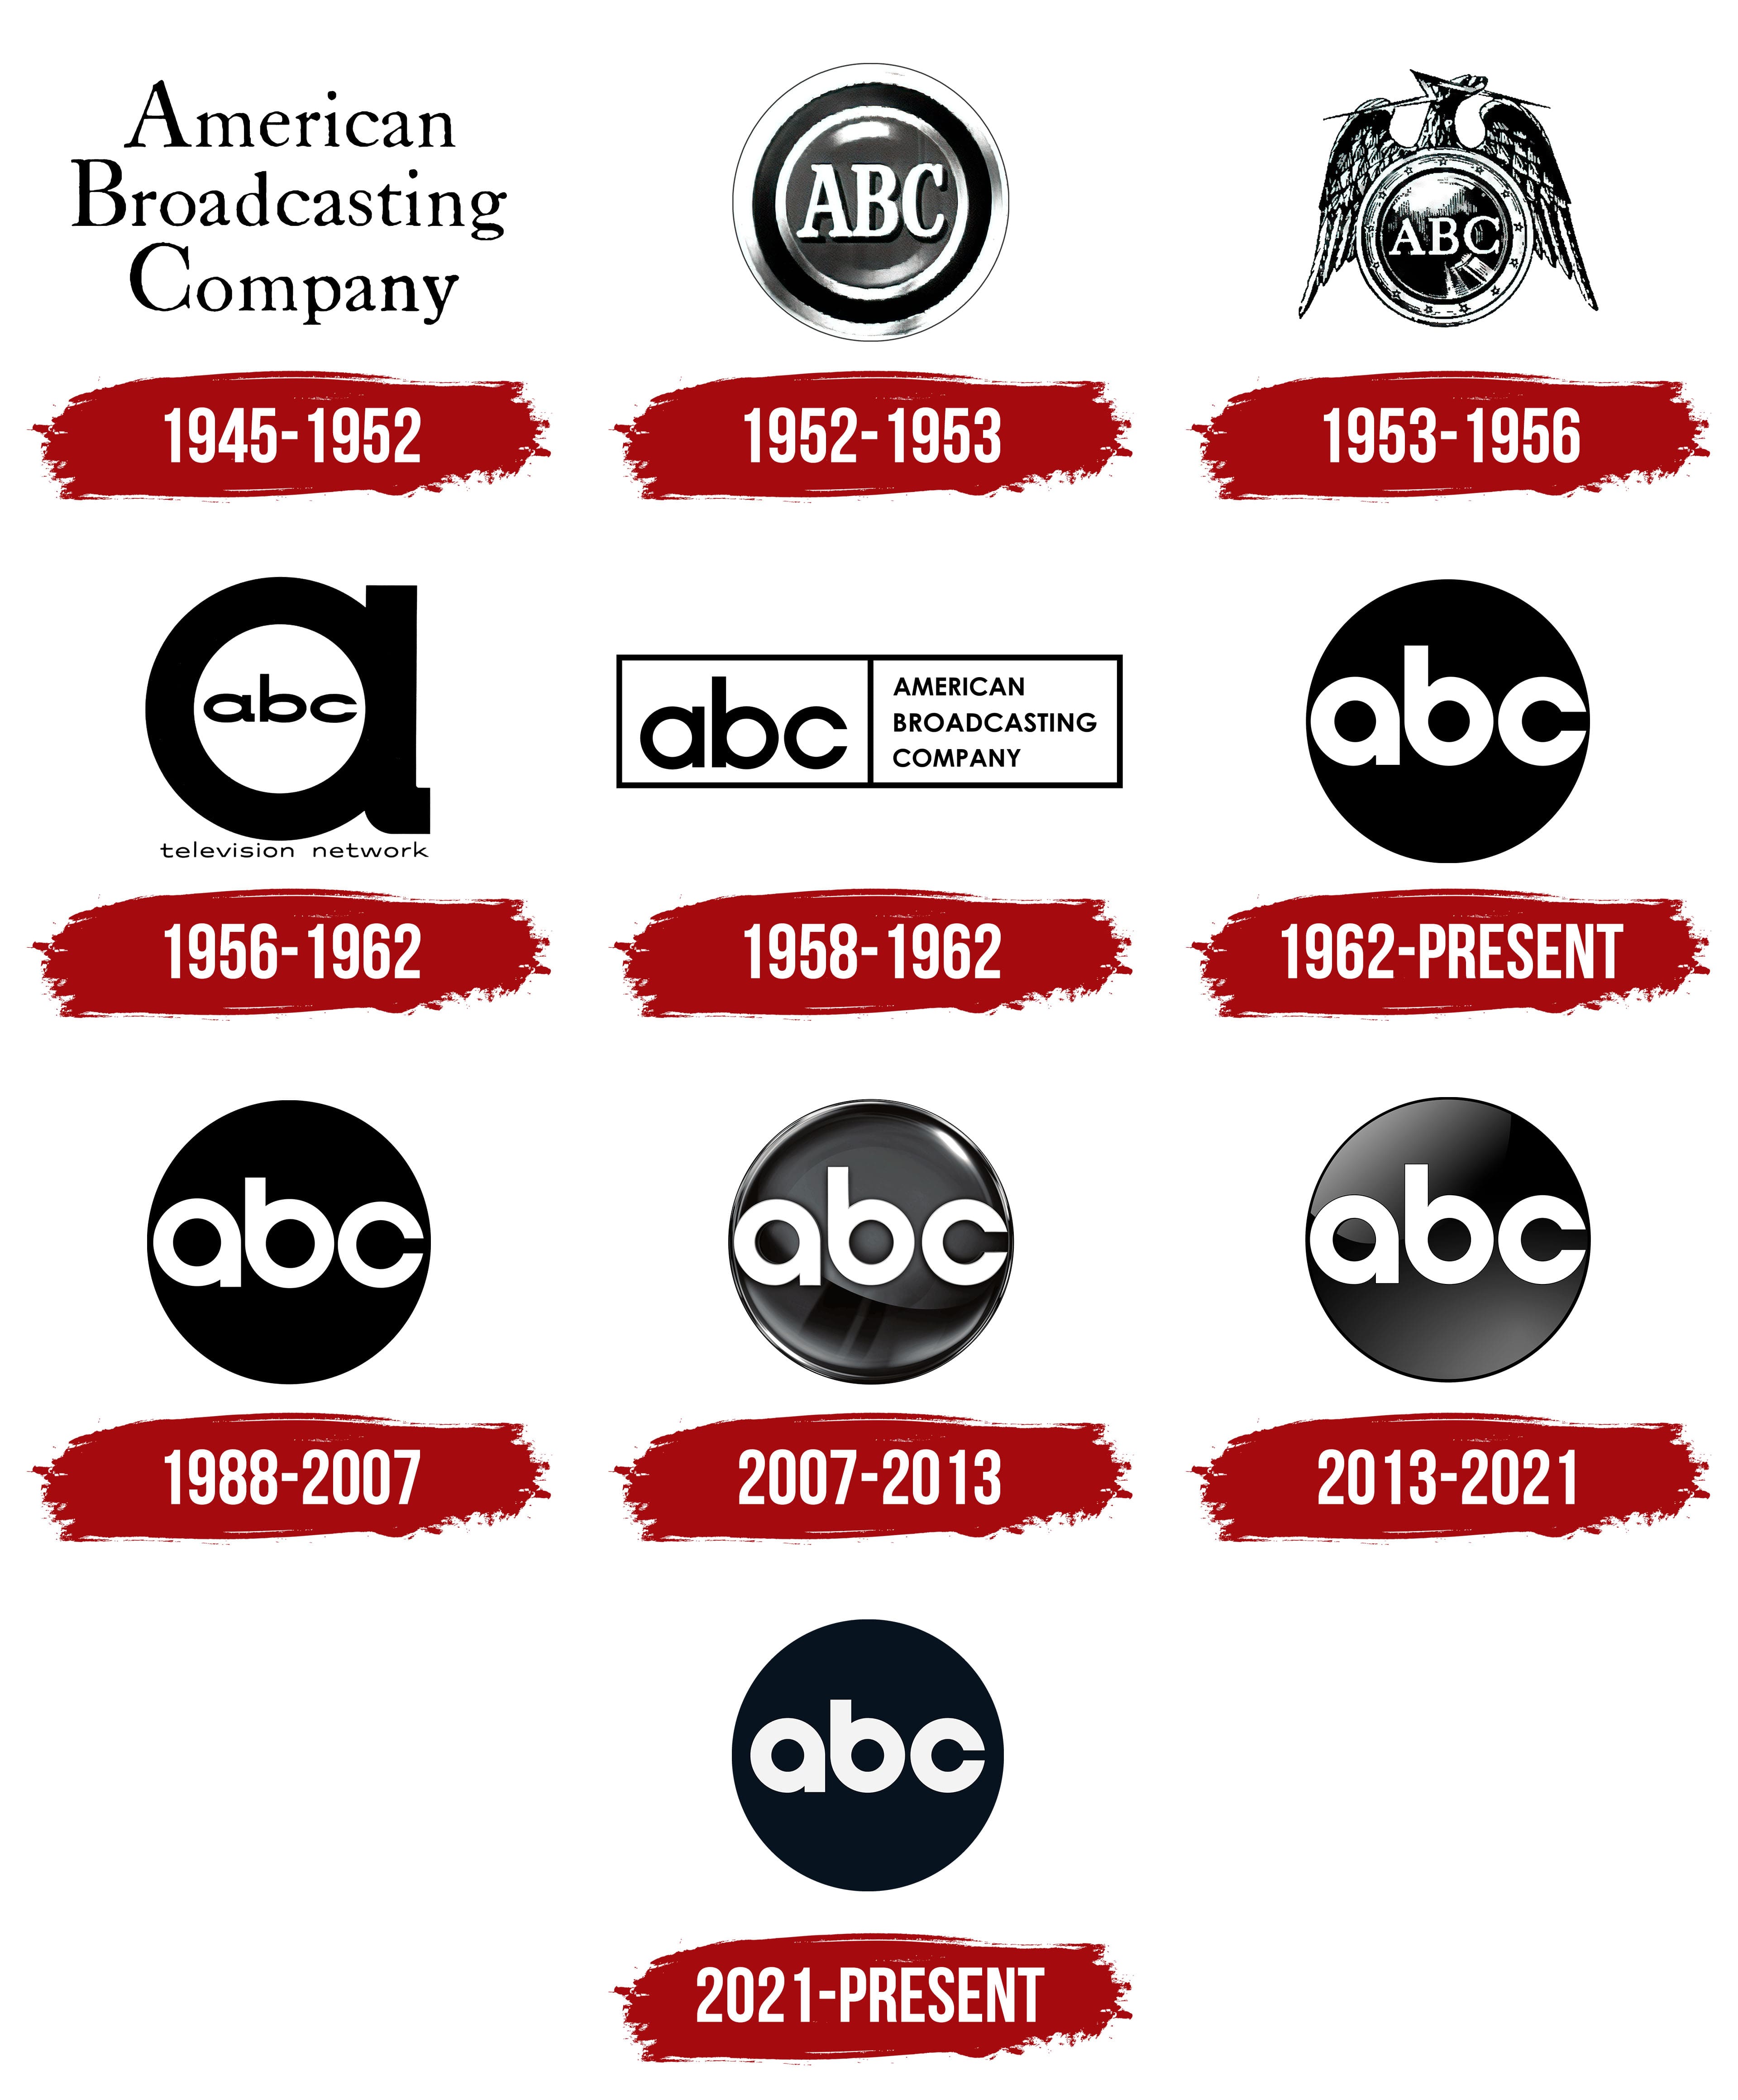 Abc Logo History